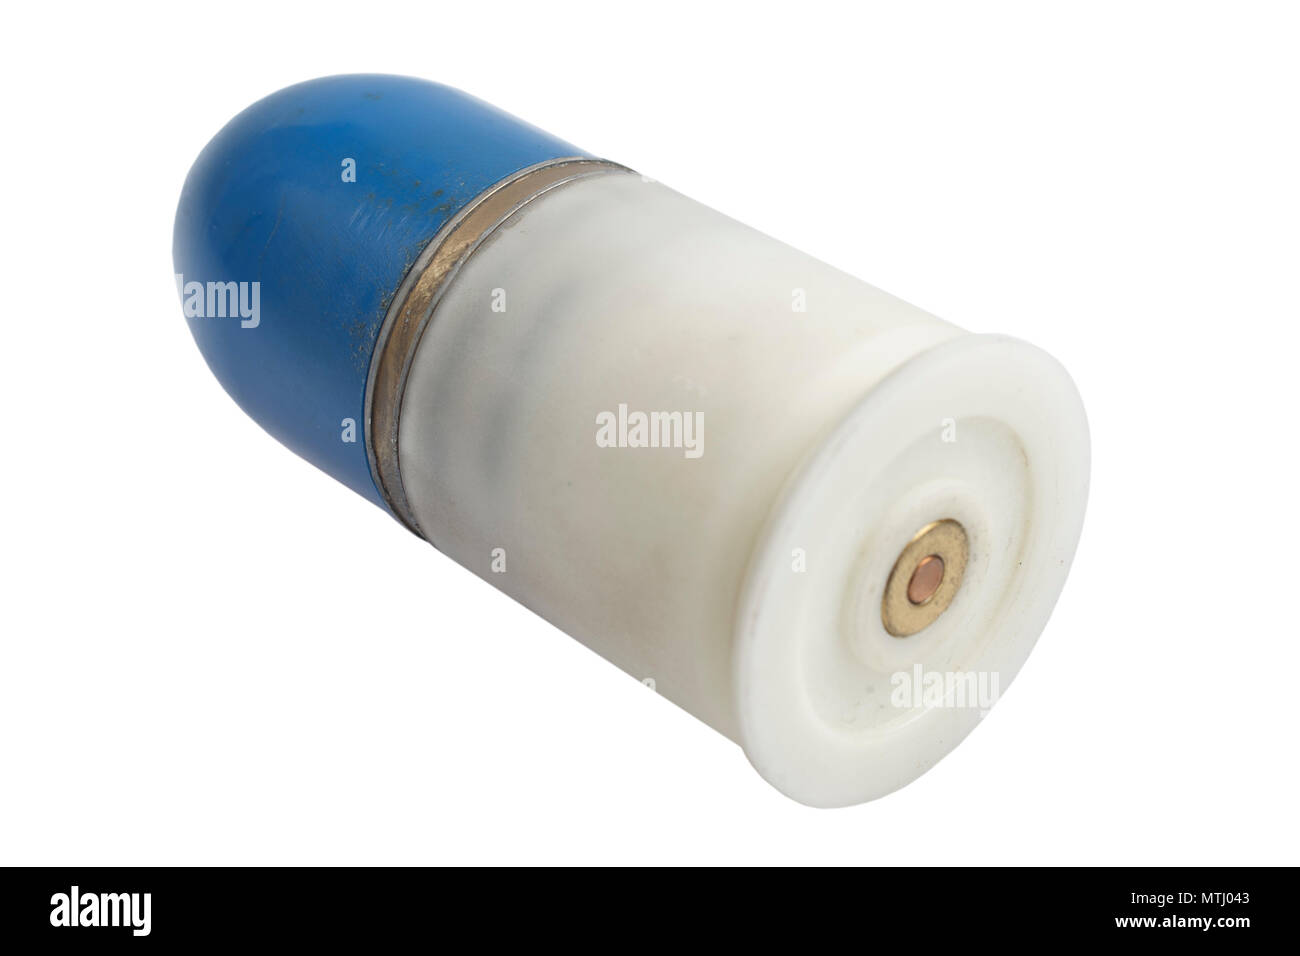 Lance-grenades de 40 mm isolé sur un fond blanc Banque D'Images